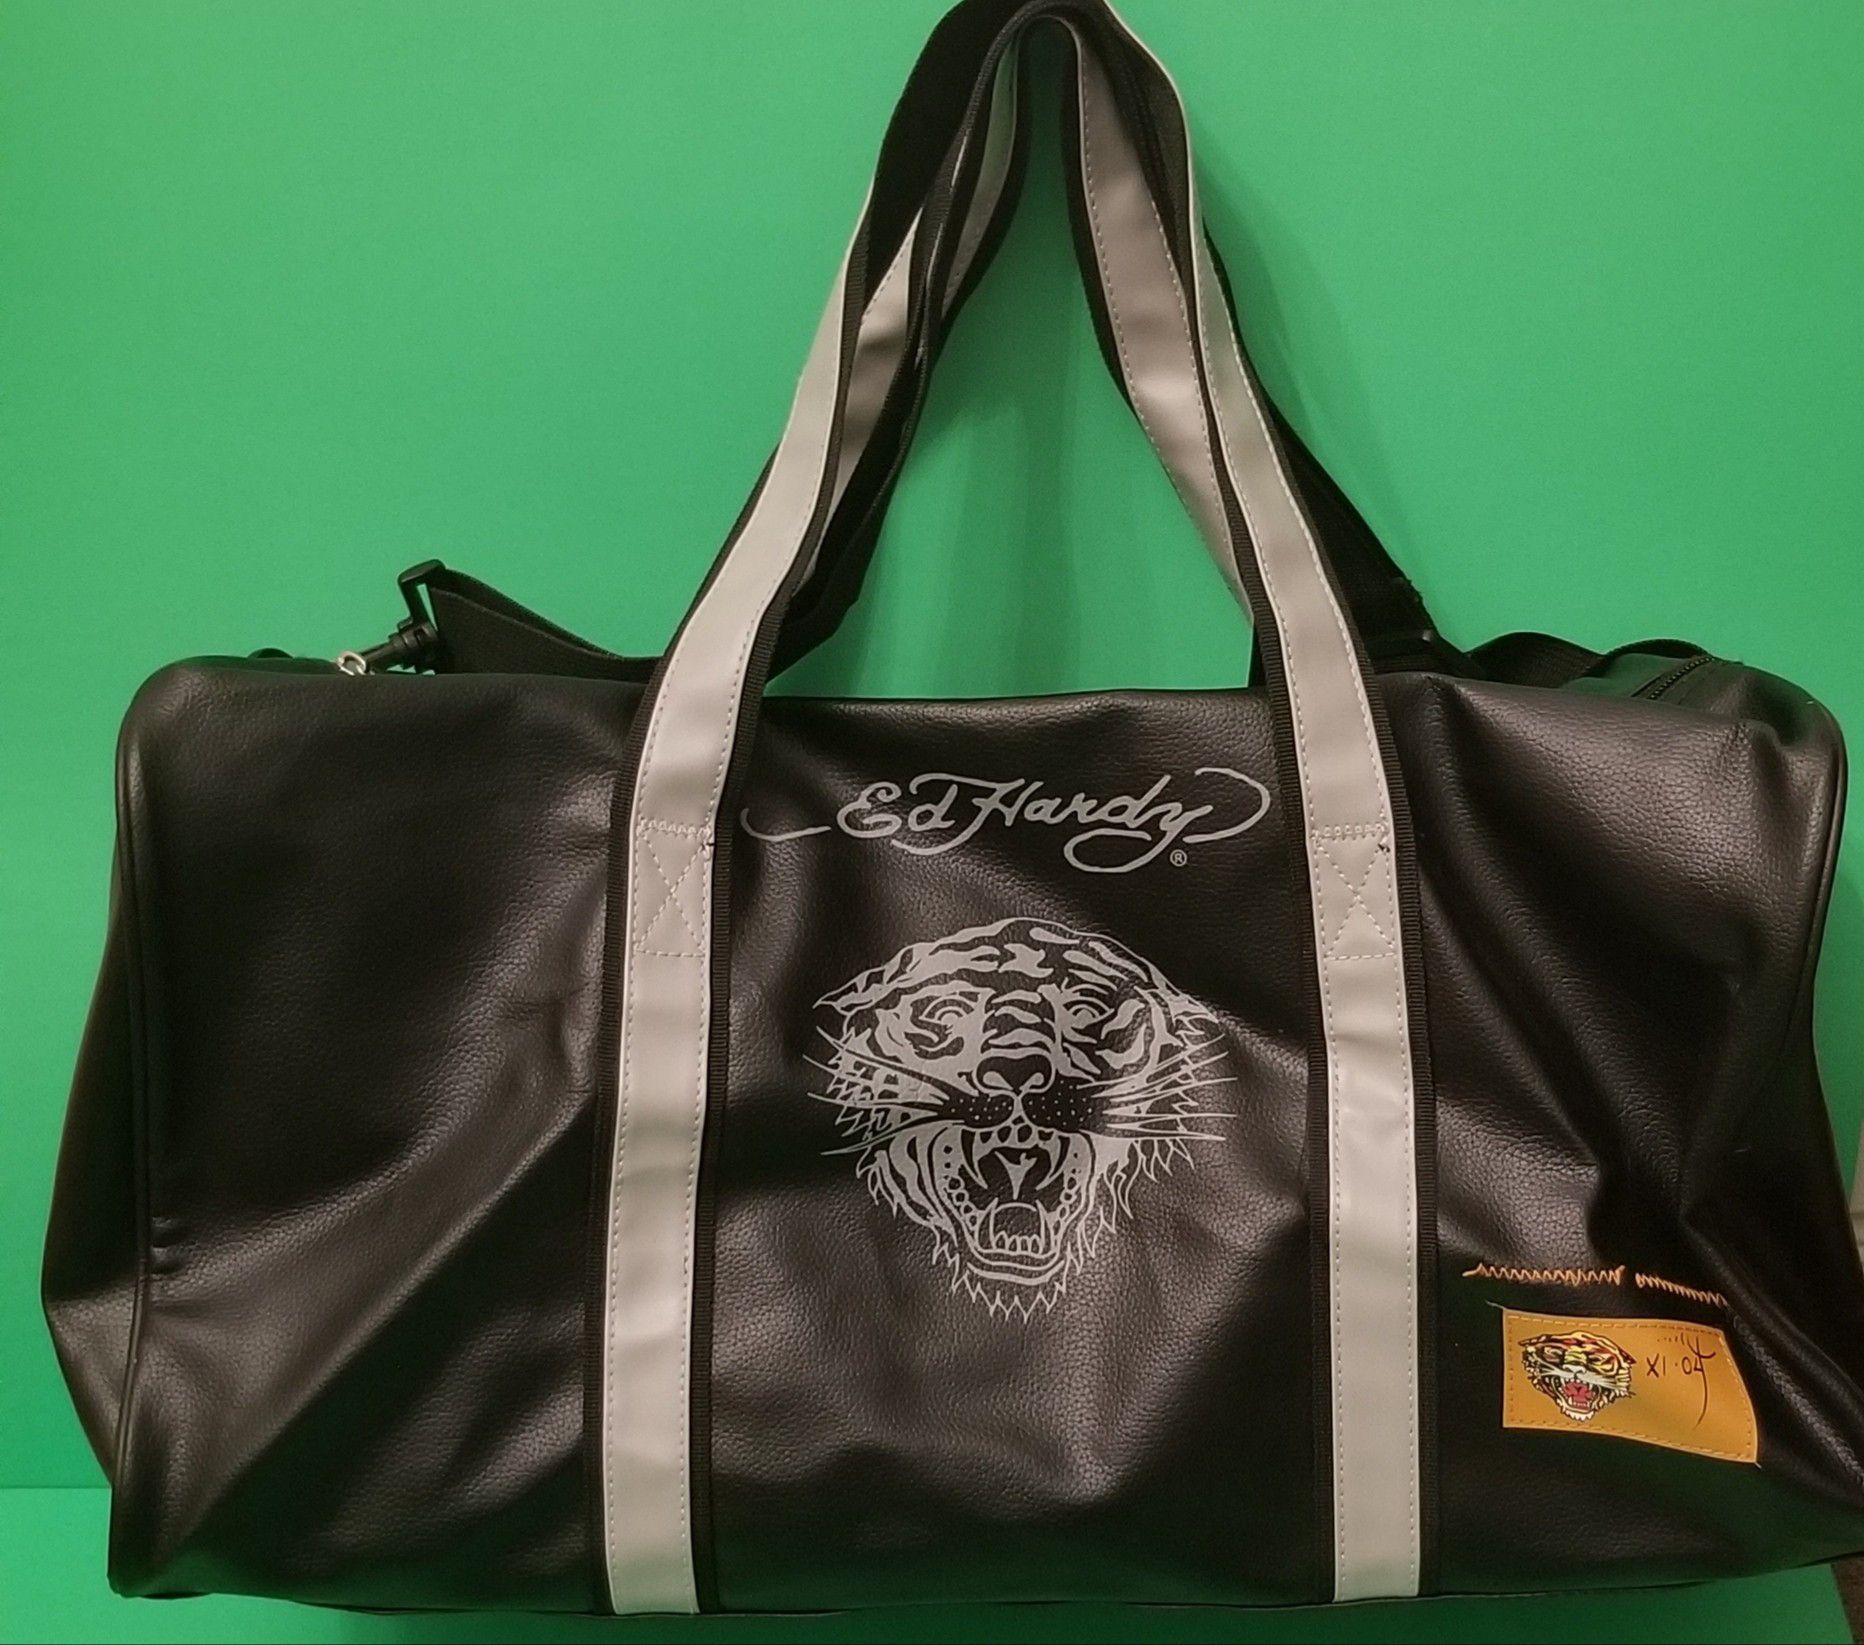 Ed Hardy Unisex Adult's Travel Duffle Bag